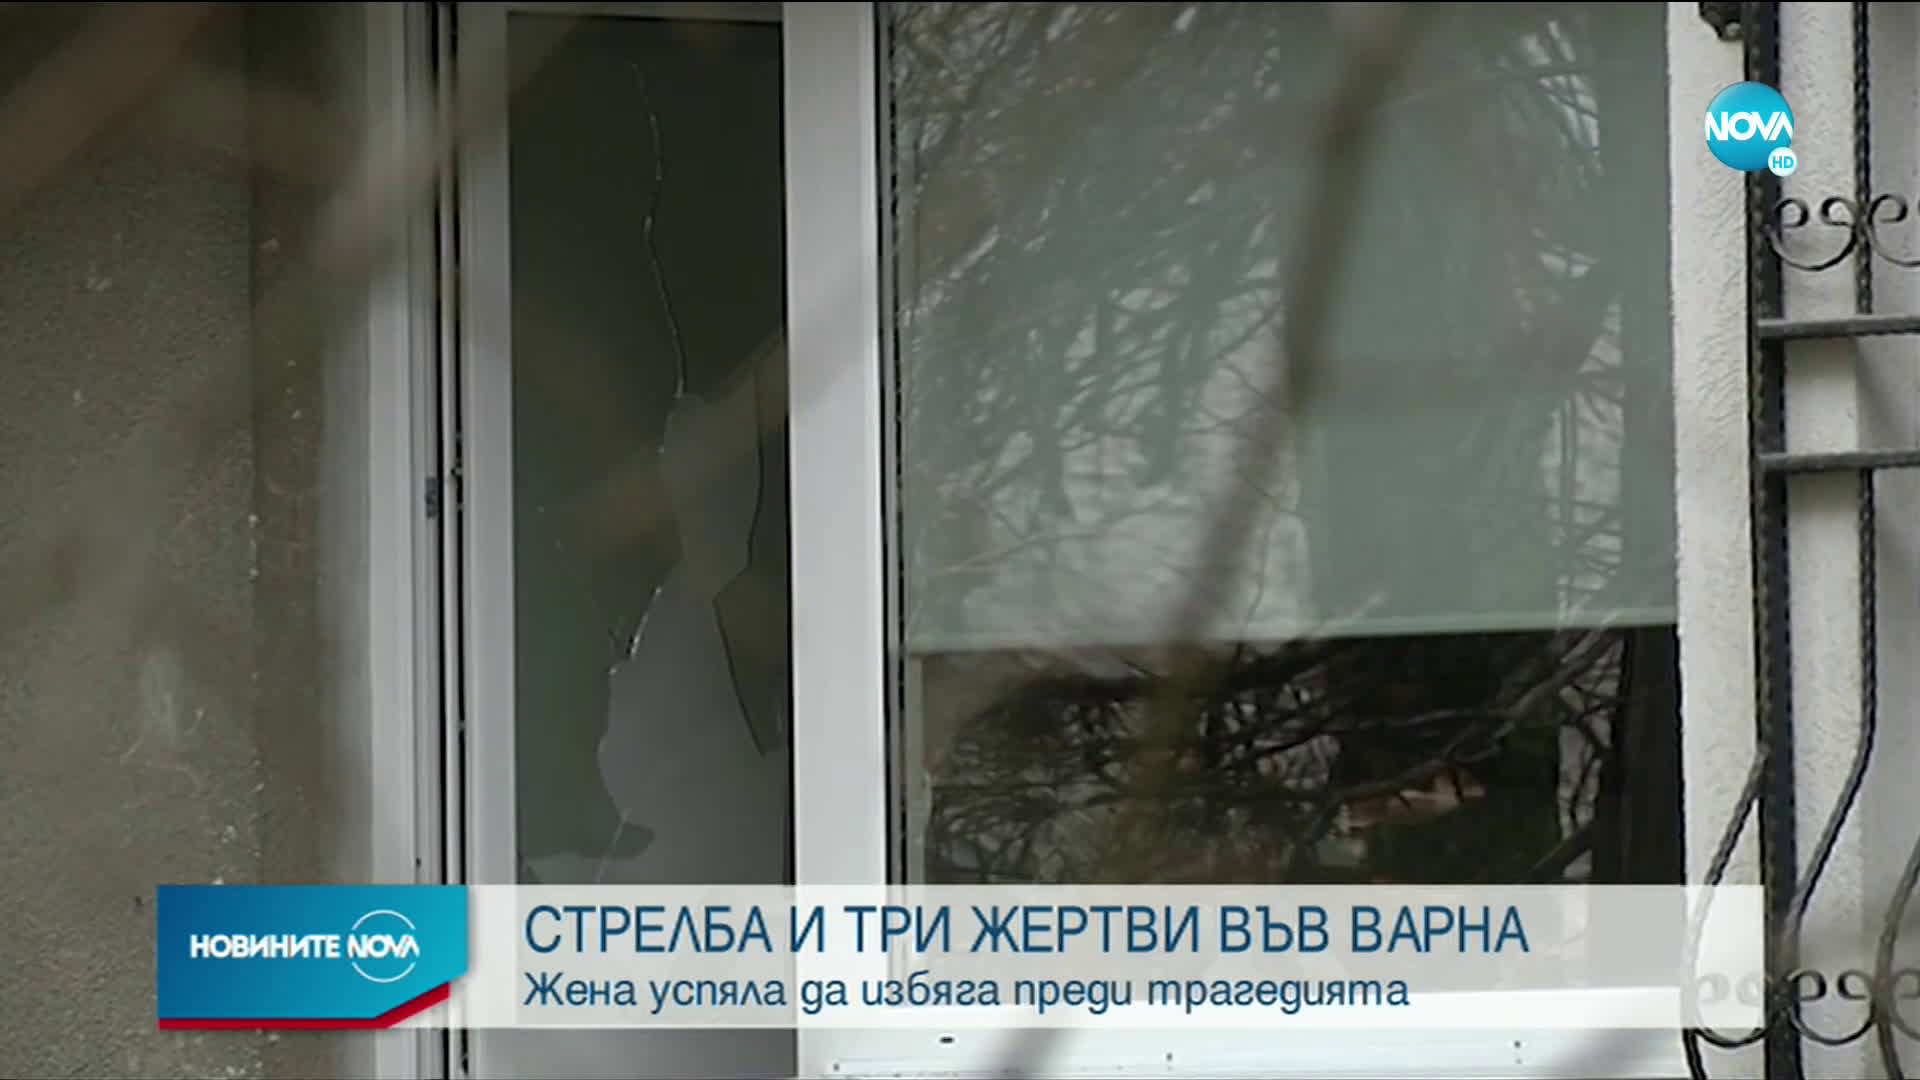 Откриха 3 трупа в апартамент във Варна, разследват убийство